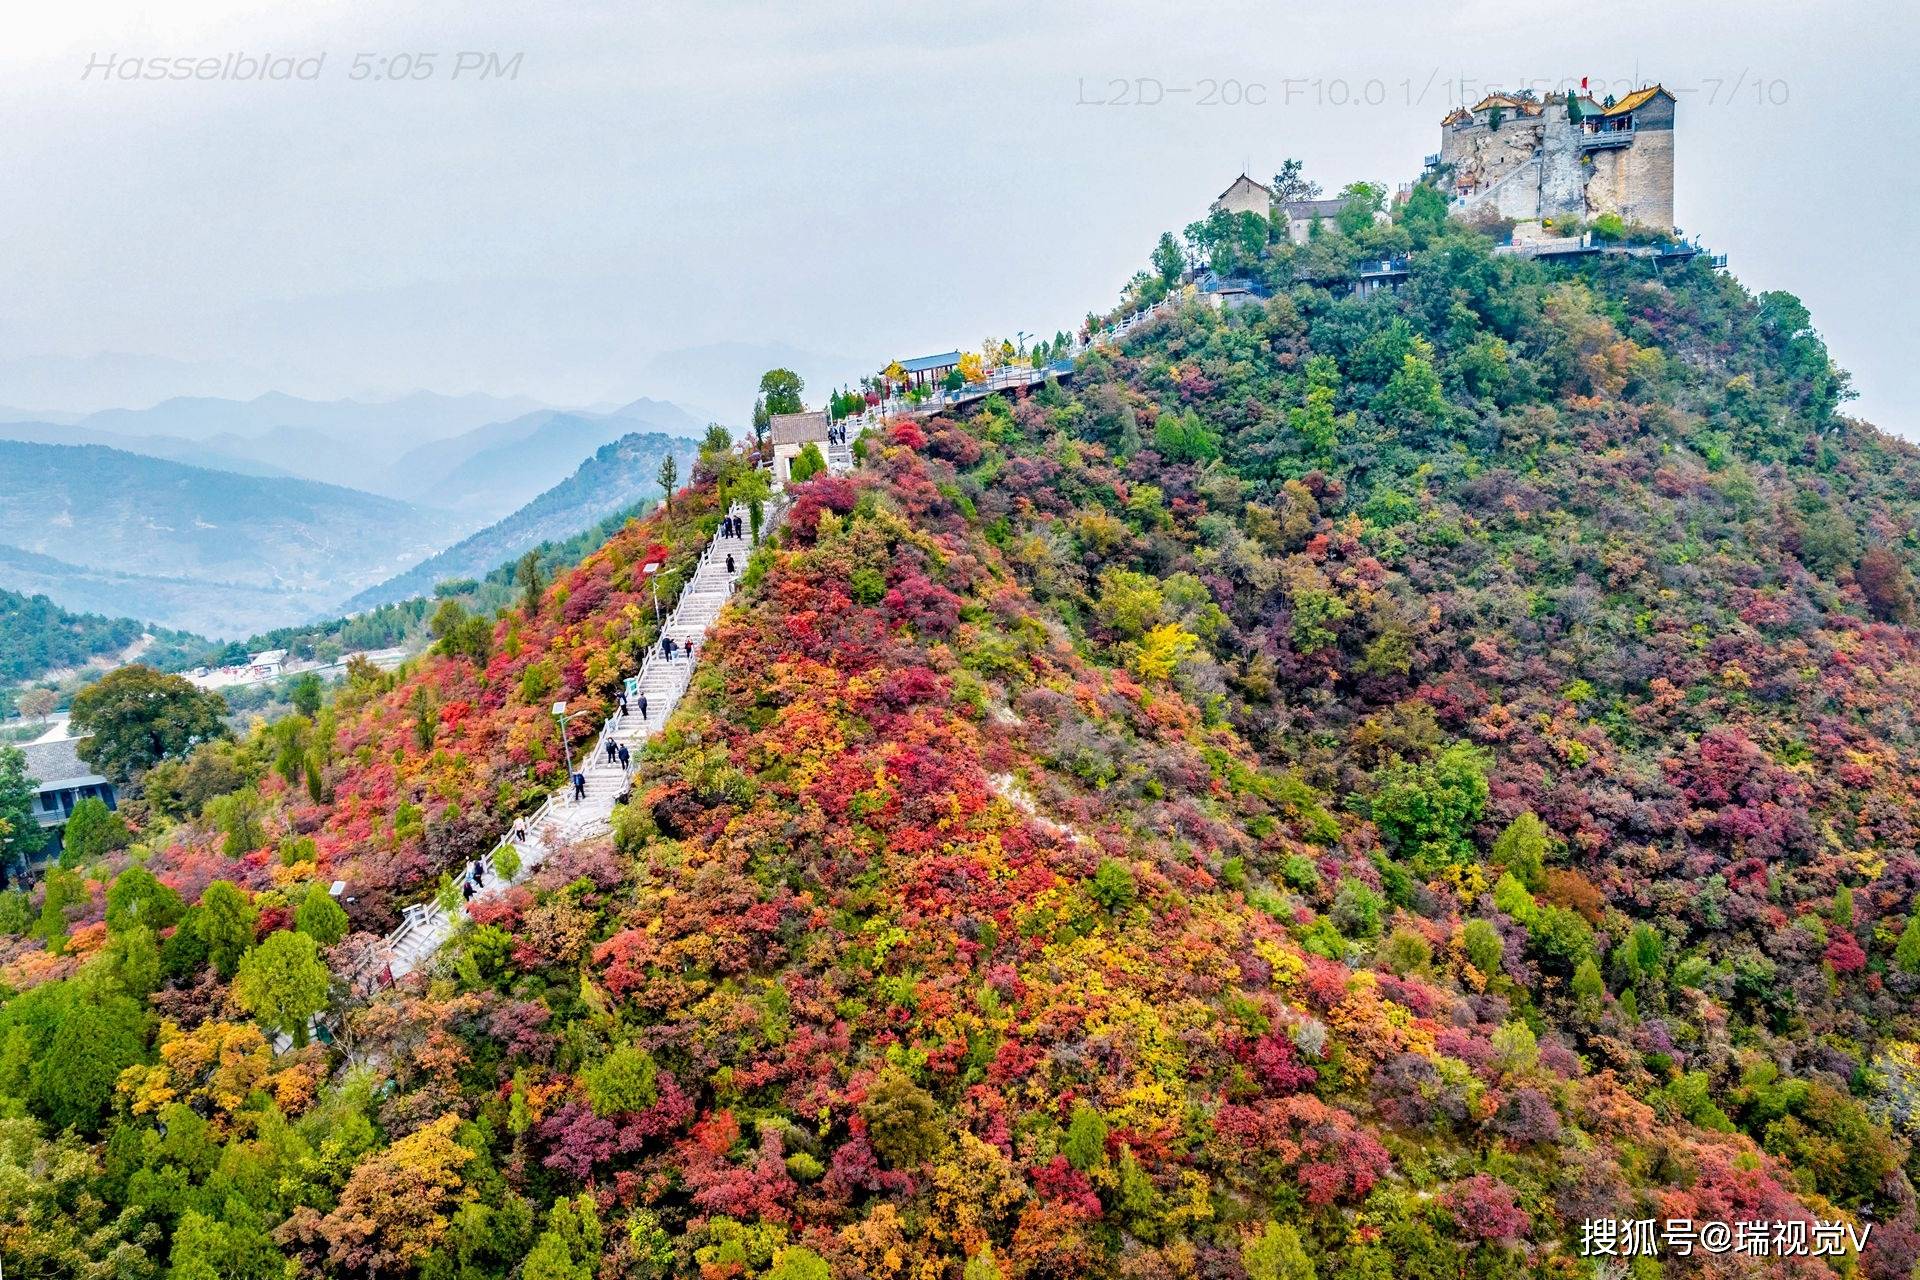 柏尖山:秋色斑斓,红叶醉游人丨河南安阳林州